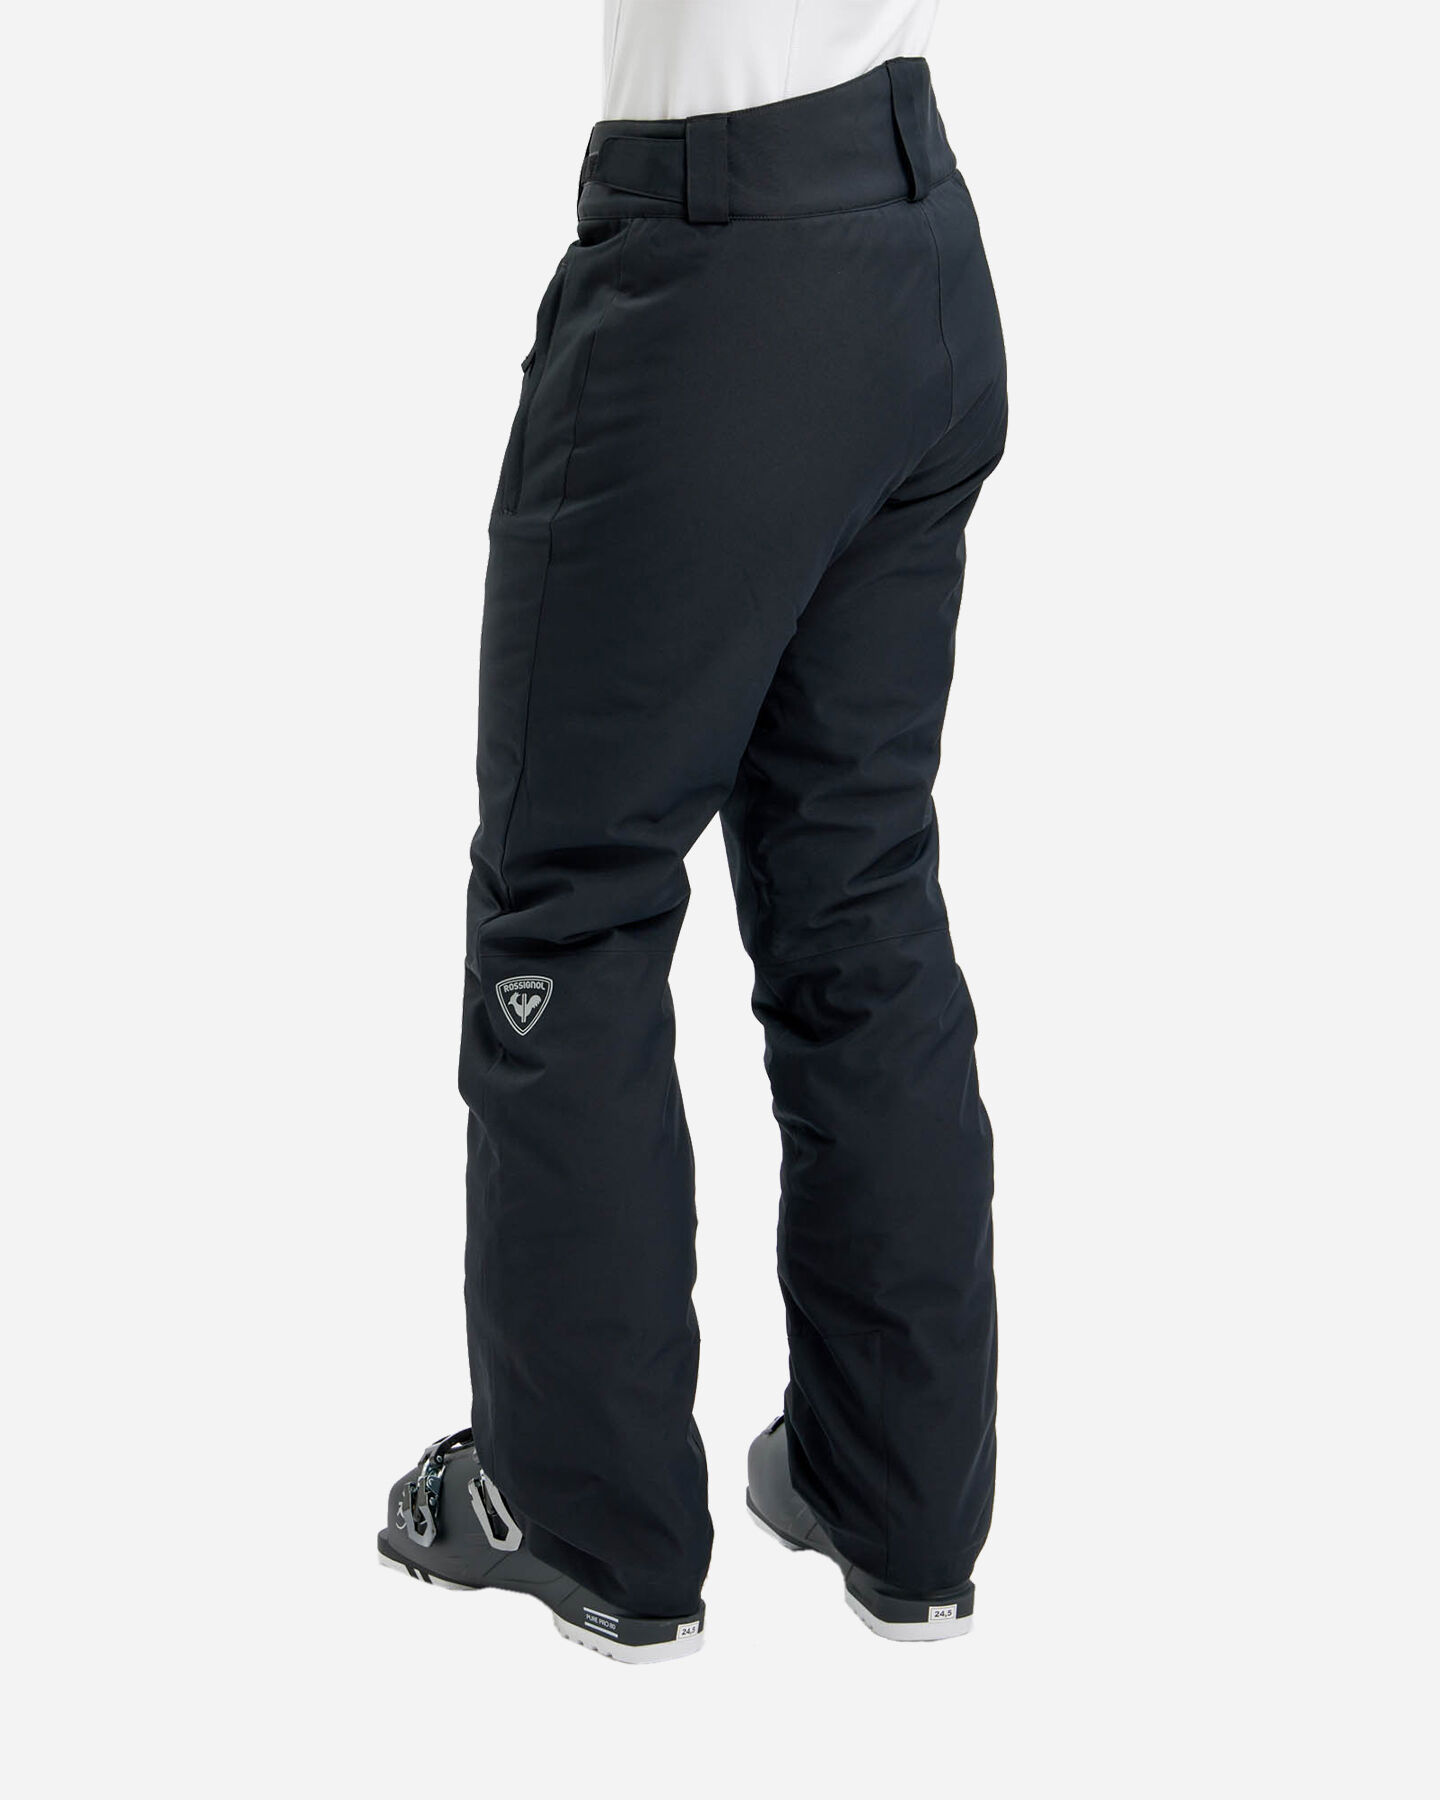  Pantalone sci ROSSIGNOL PODIUM W S4117748|200|XL scatto 1